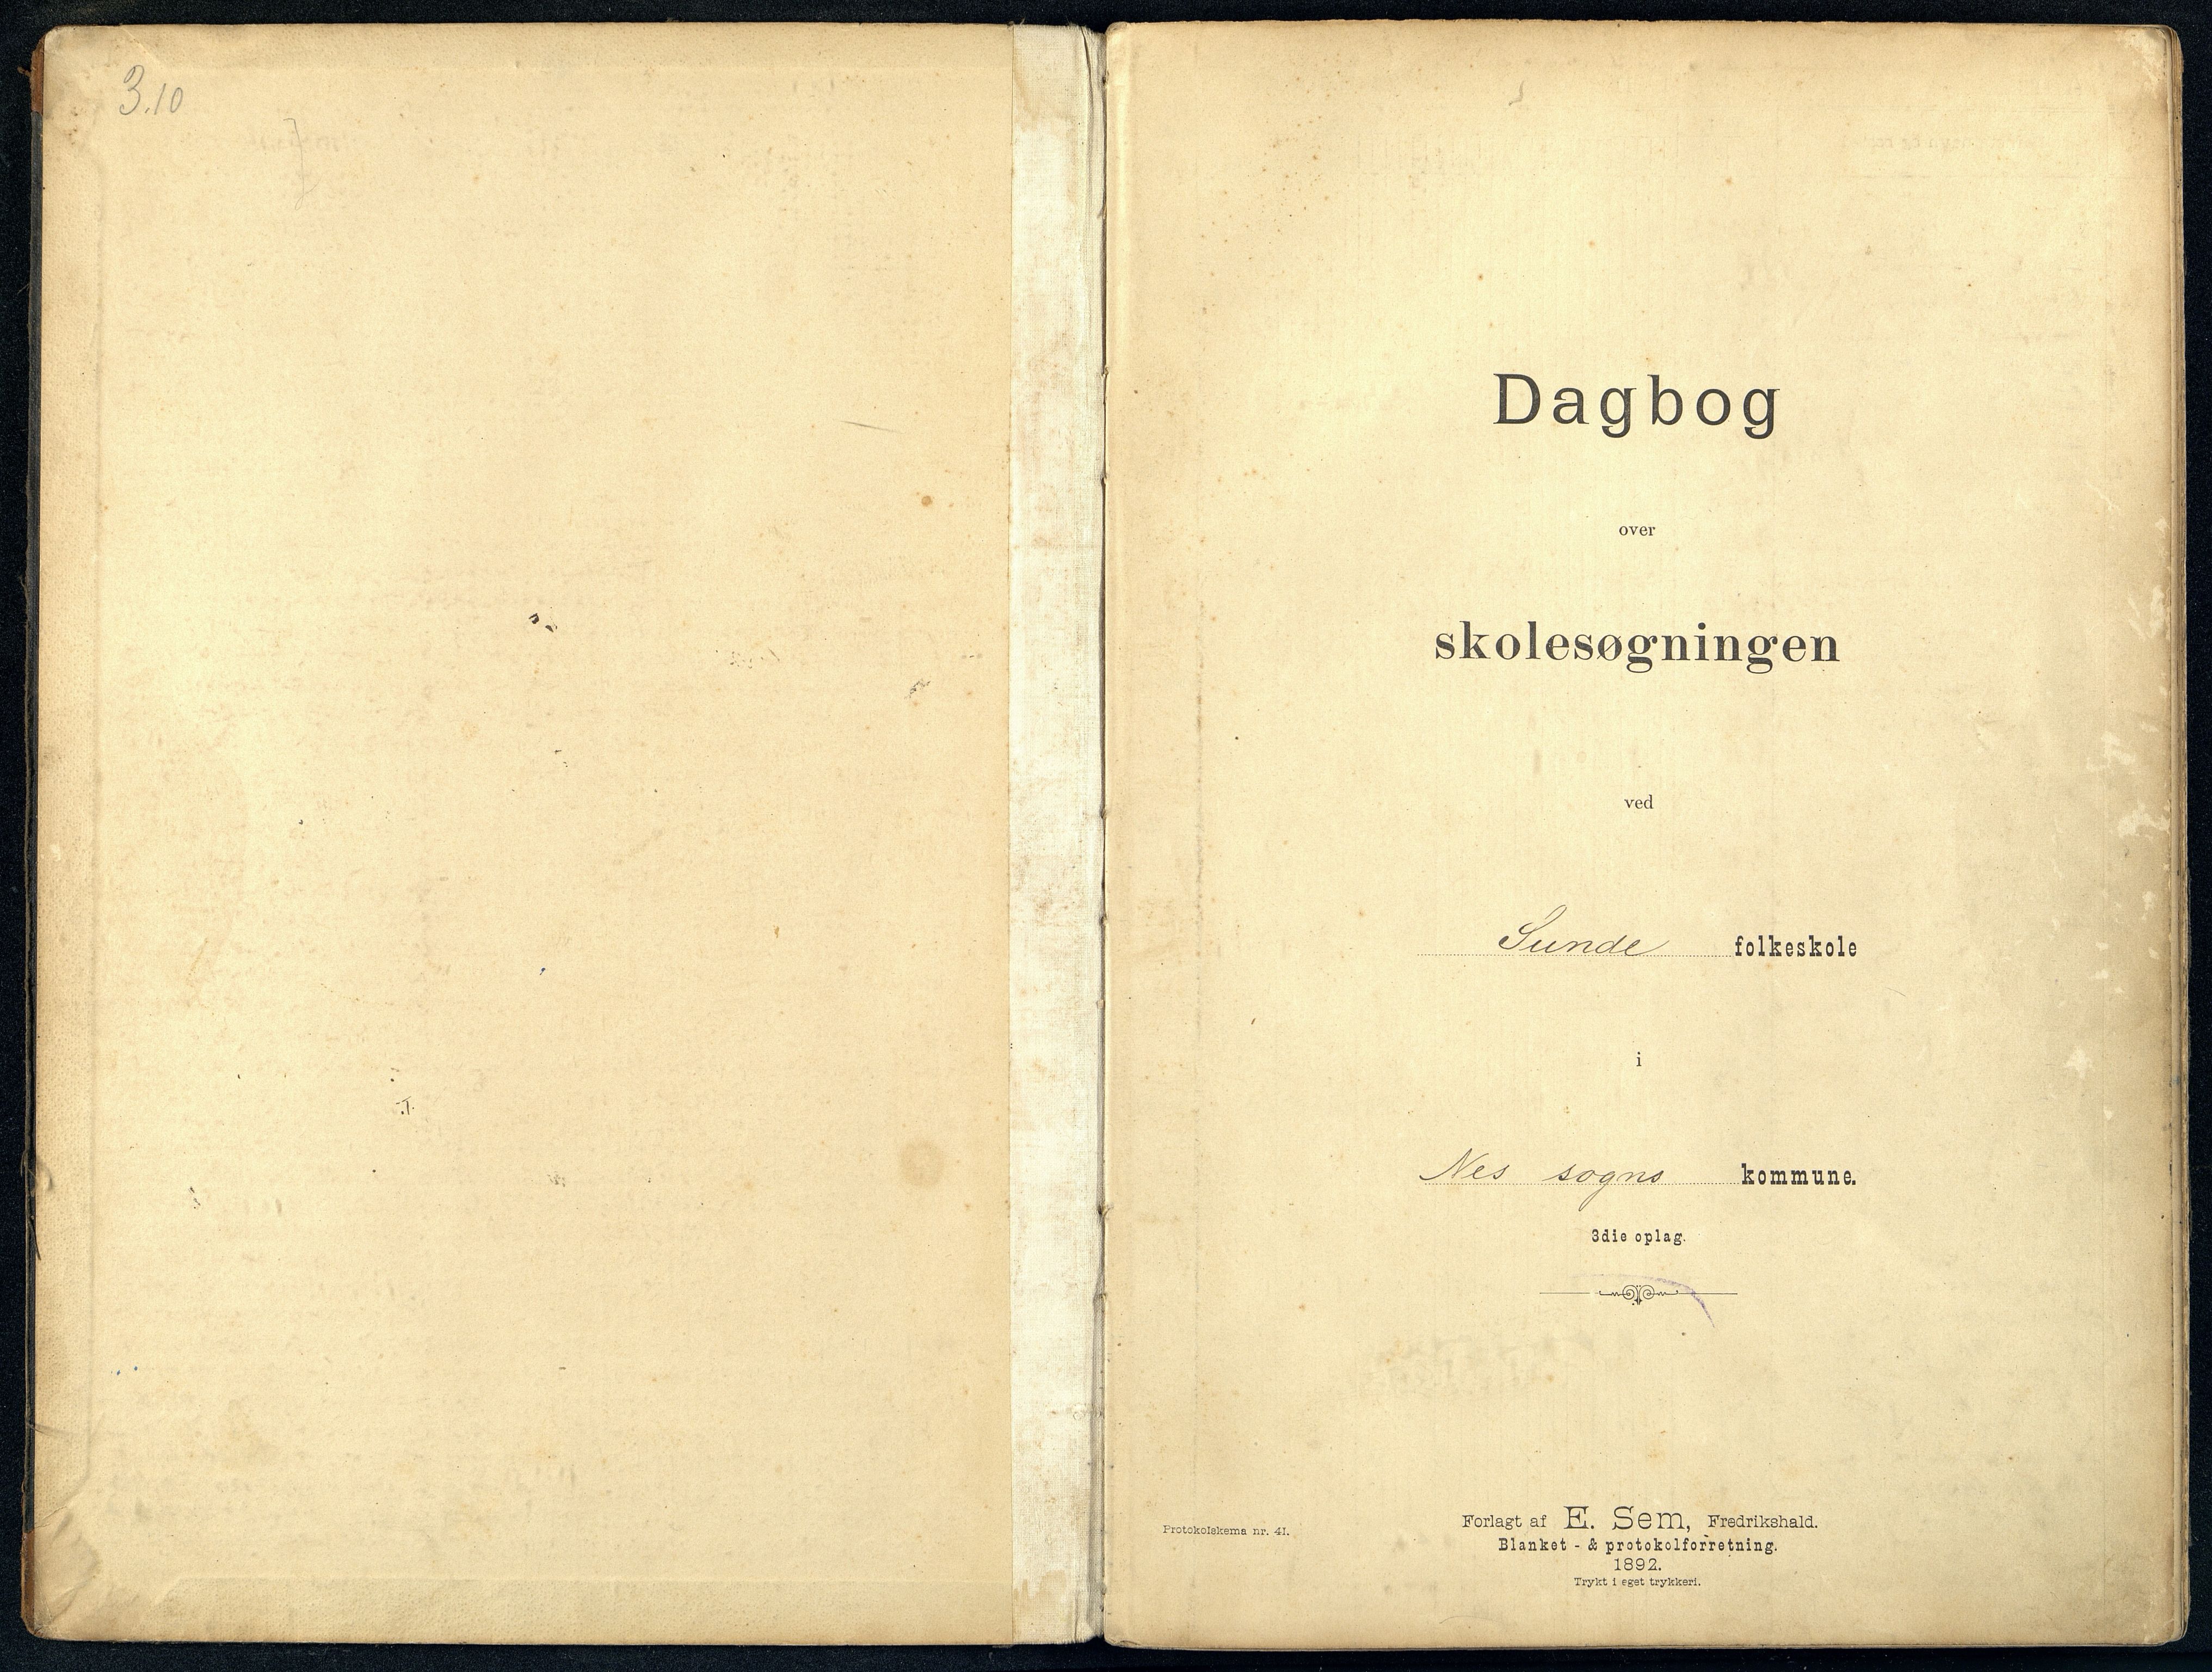 Nes kommune - Sunde Skole, IKAV/1004NE556/I/L0001: Dagbok, 1895-1910